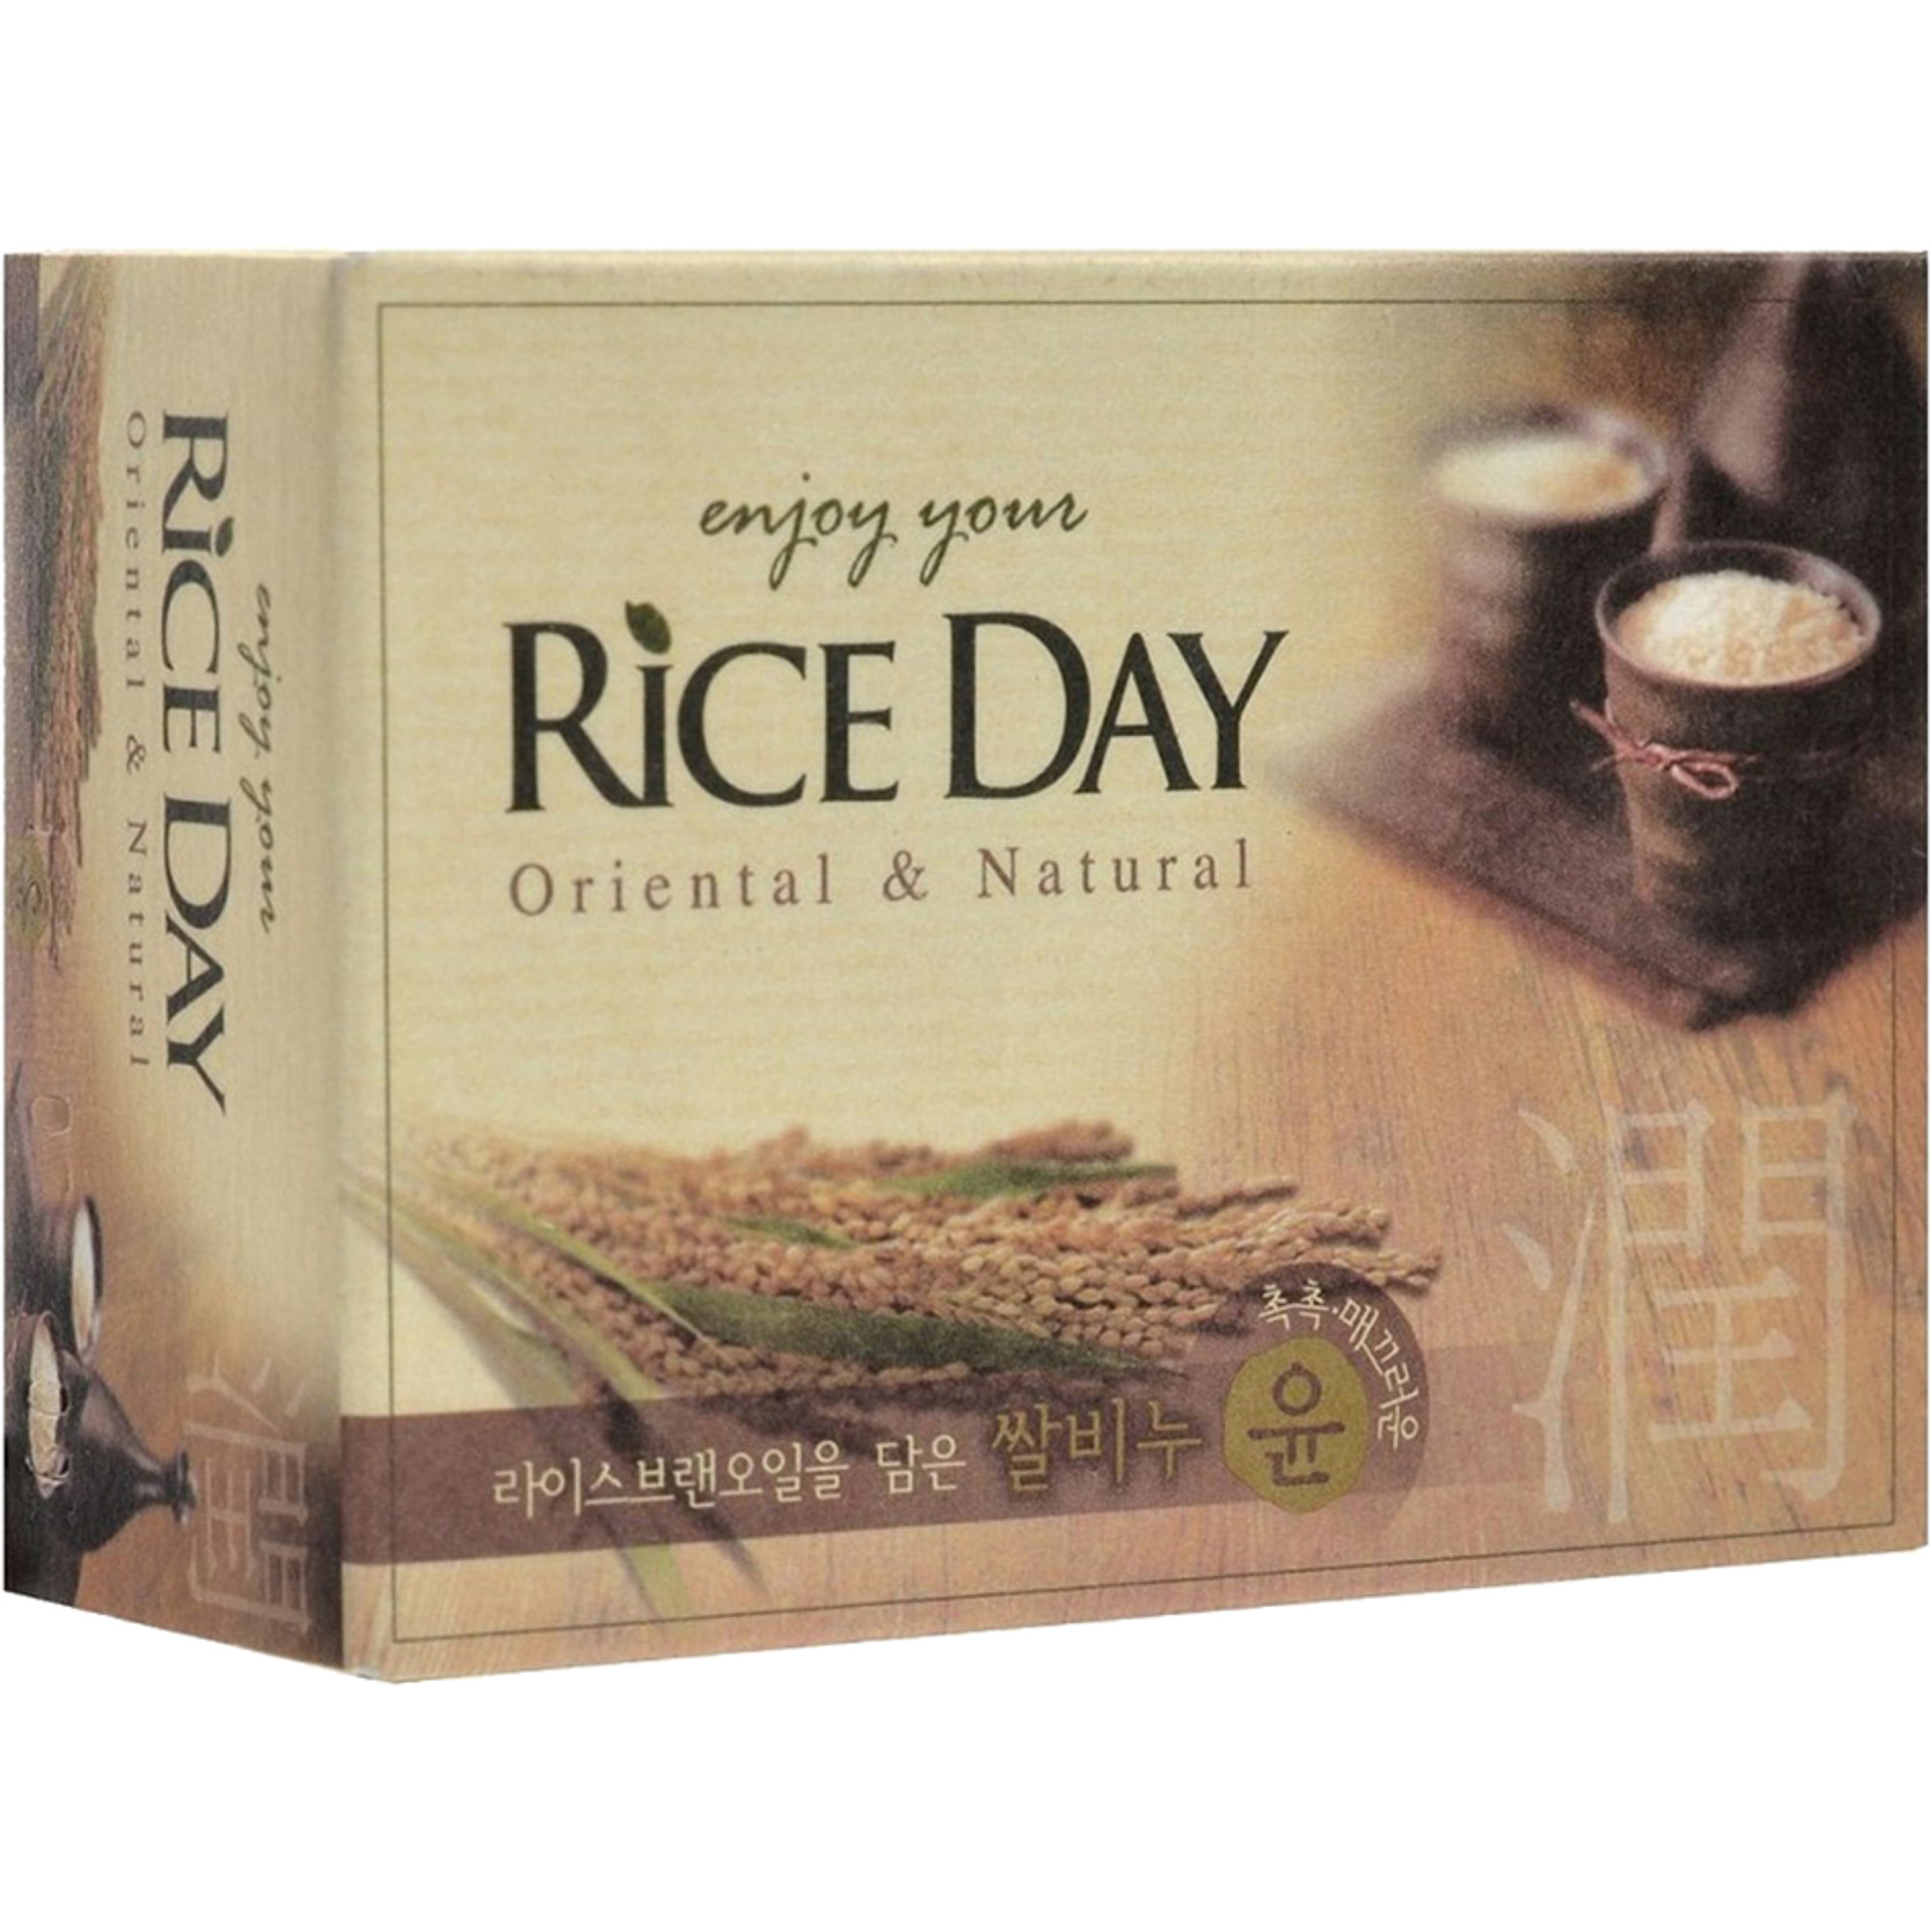 Мыло CJ Lion Rice Day с экстрактом рисовых отрубей 100 г скраб мыло cj lion rice day древесный уголь 100 г